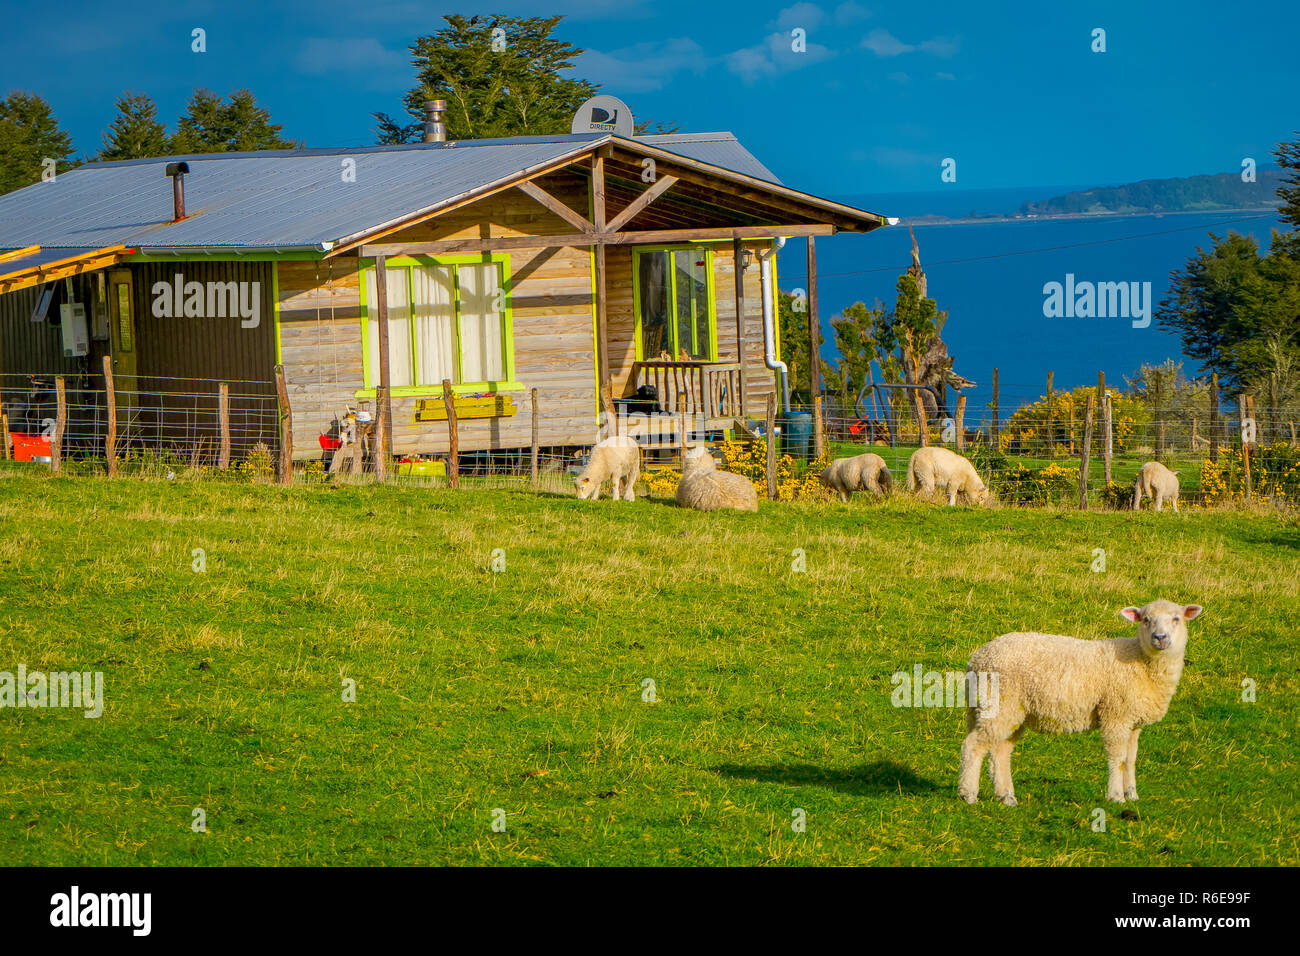 Im freien Blick auf den wunderschönen Schafe grasen auf den Wiesen mit einem Holzhaus Gebäude hinter in Chiloe, Chile Stockfoto